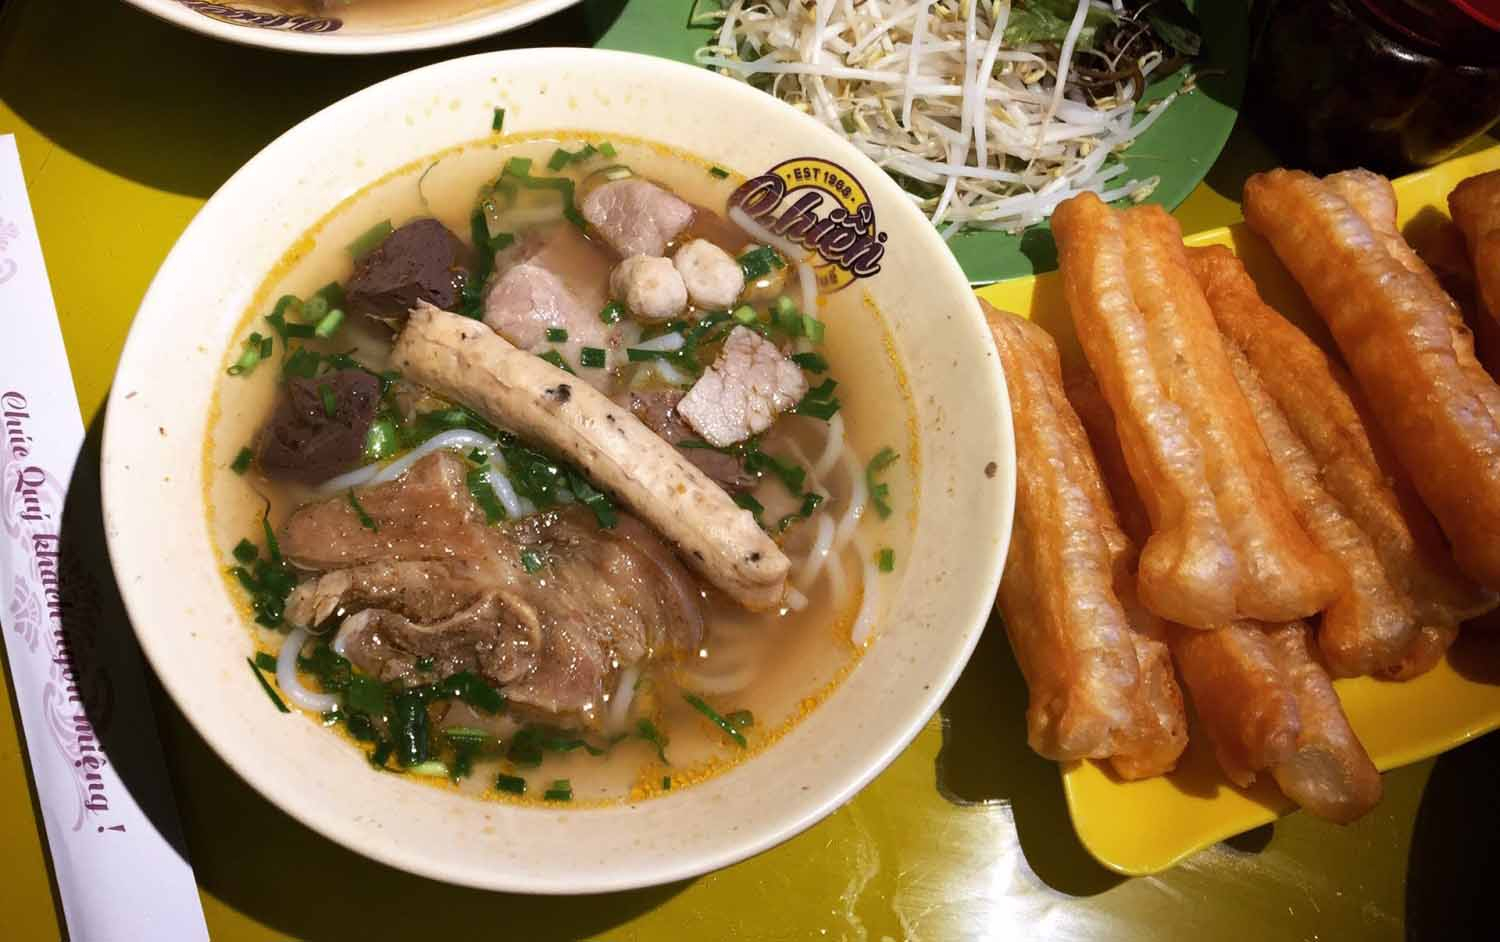 O Hiền - Bún Bò Huế & Lẩu Đuôi Bò - Tô Hiệu Ở Quận Cầu Giấy, Hà Nội |  Foody.Vn